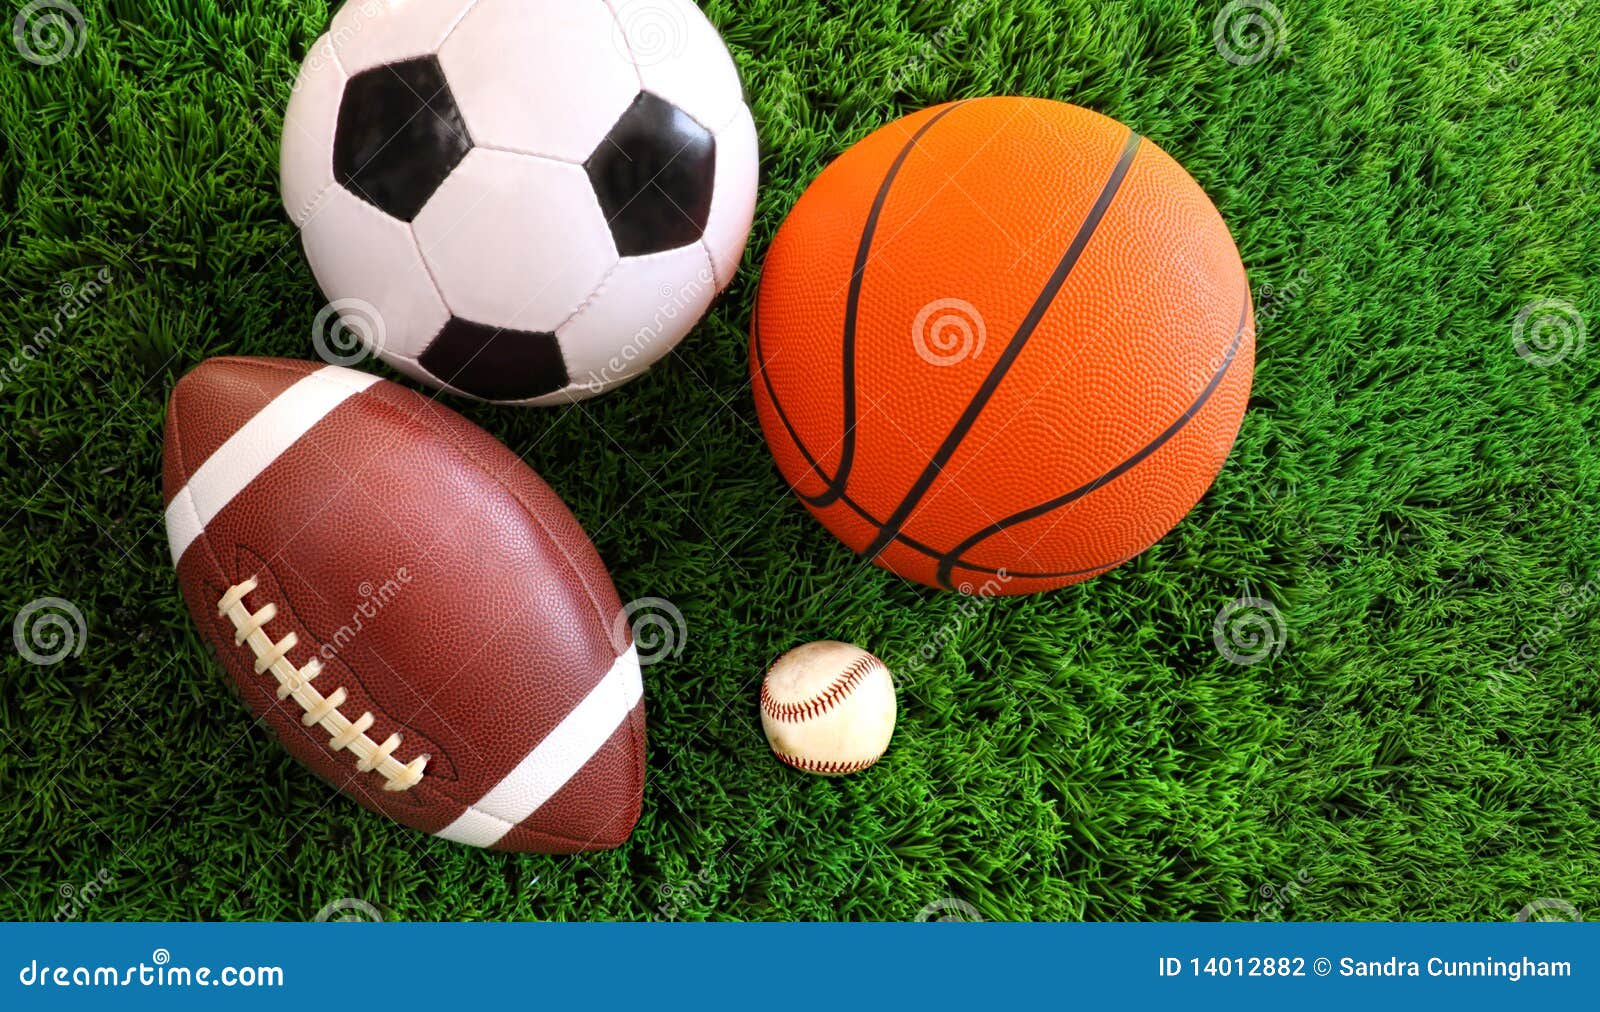 assortment of sport balls on grass